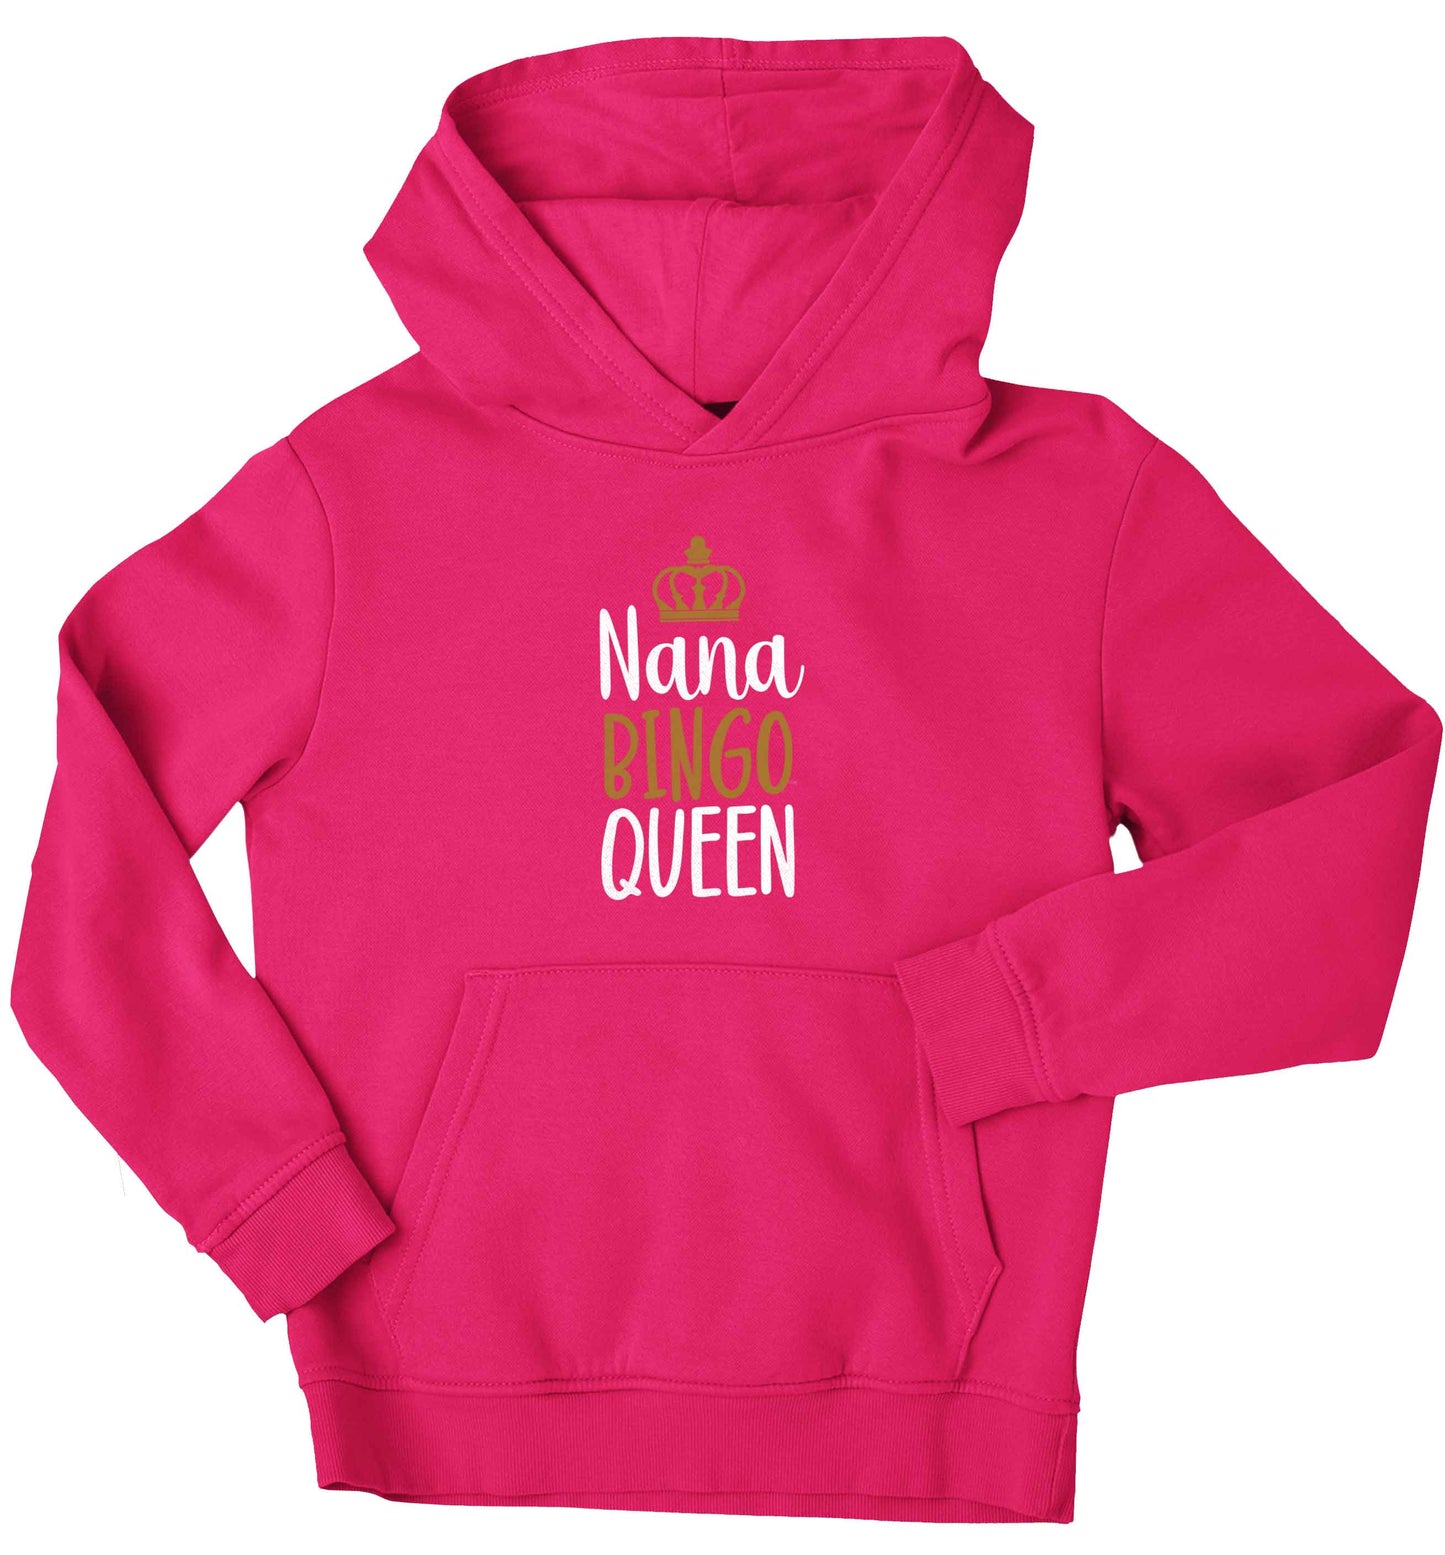 Personalised bingo queen children's pink hoodie 12-13 Years